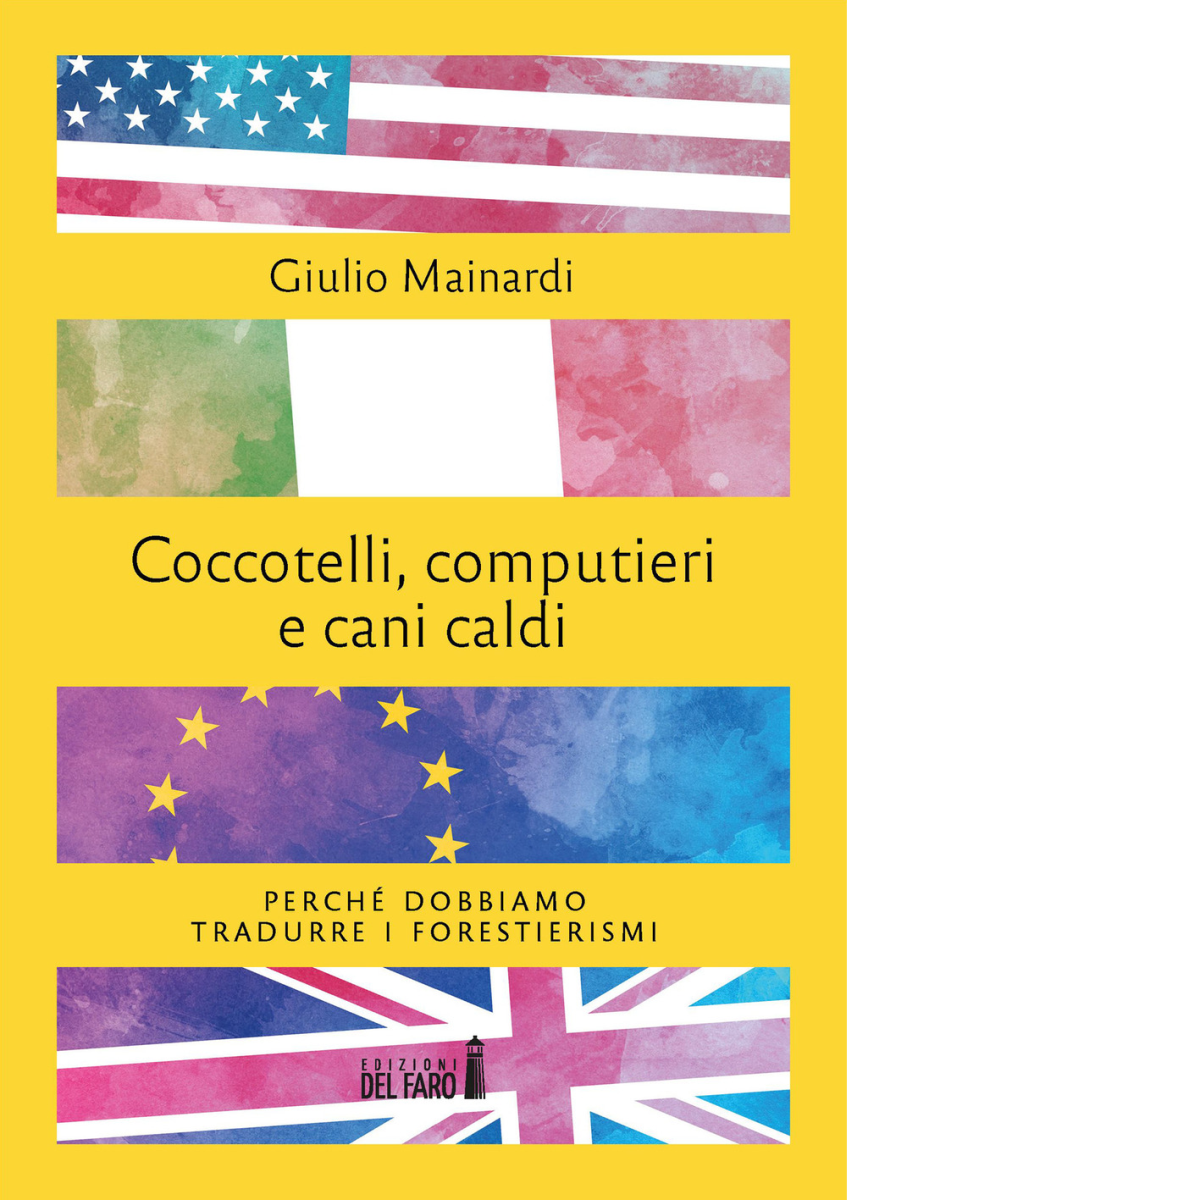 Coccotelli, computieri e cani caldi di Giulio Mainardi - Del faro, 2021 libro usato